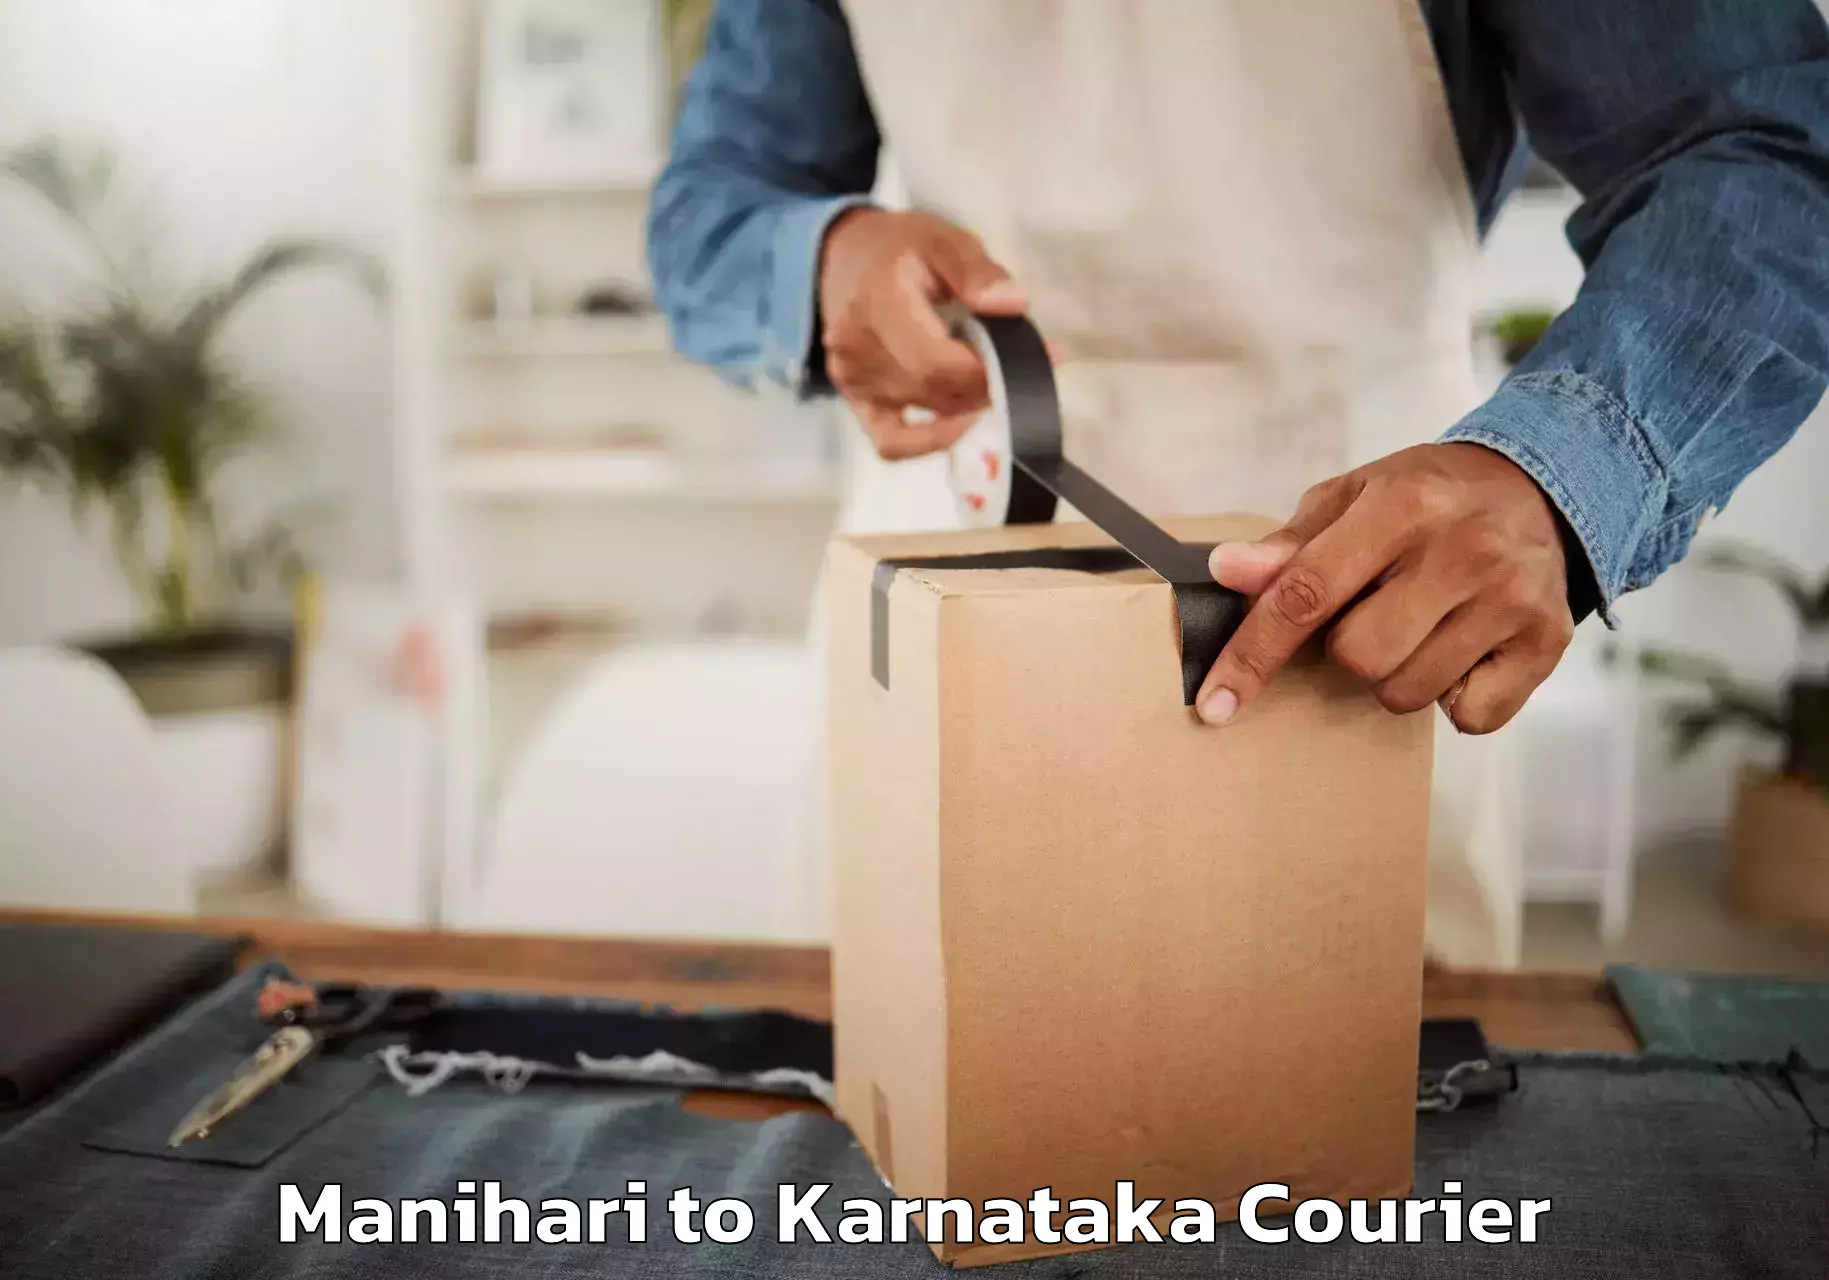 Trusted relocation experts Manihari to Karnataka